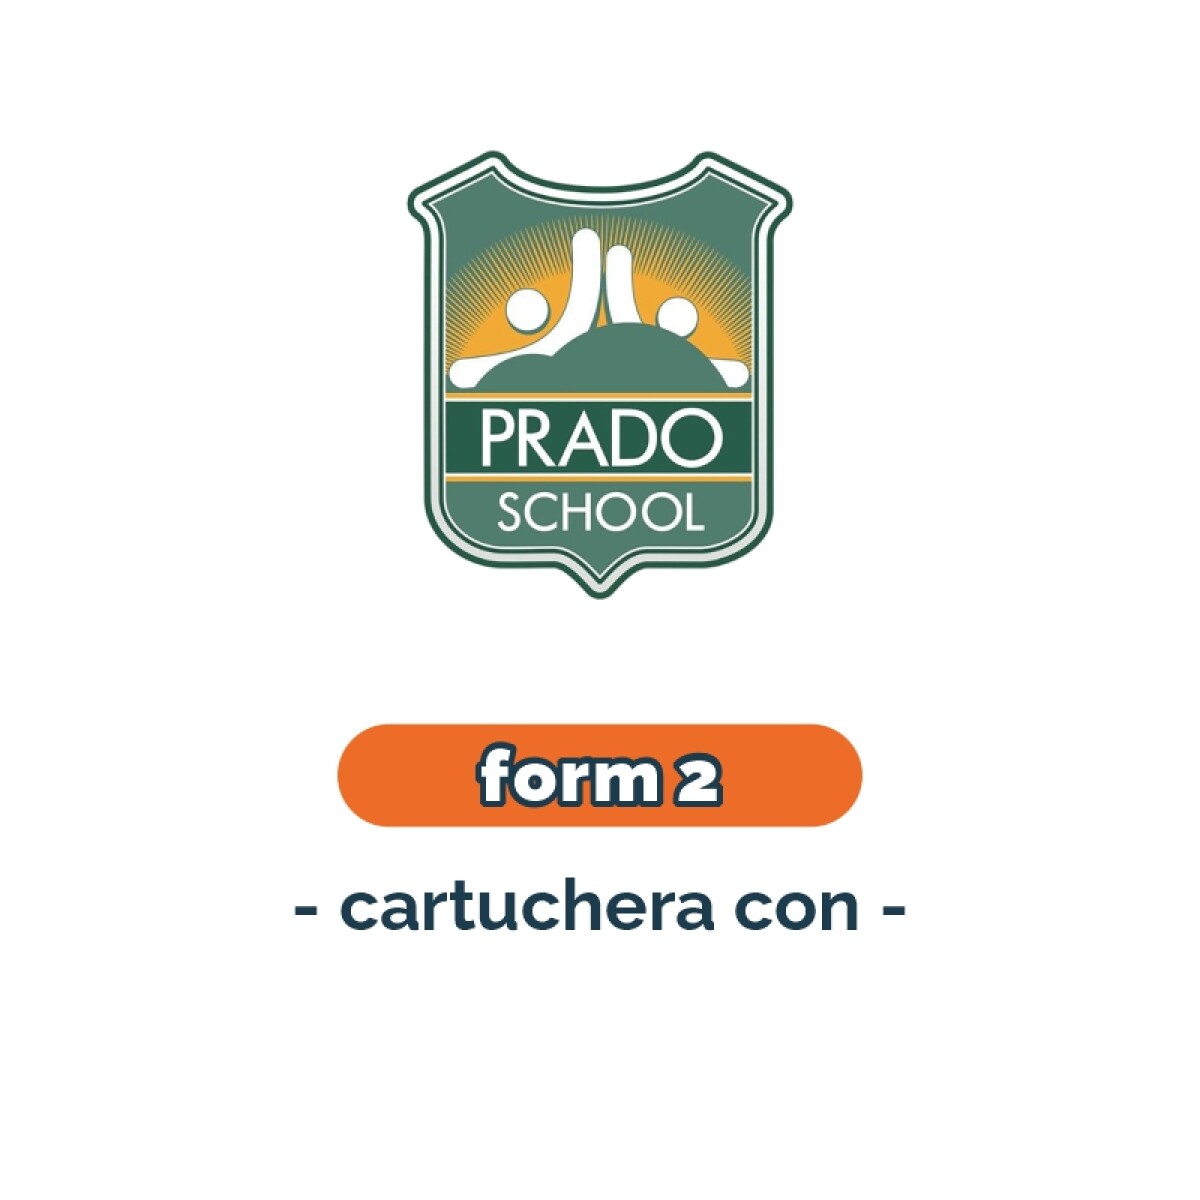 Lista de materiales - Primaria Form 2 cartuchera Prado School 